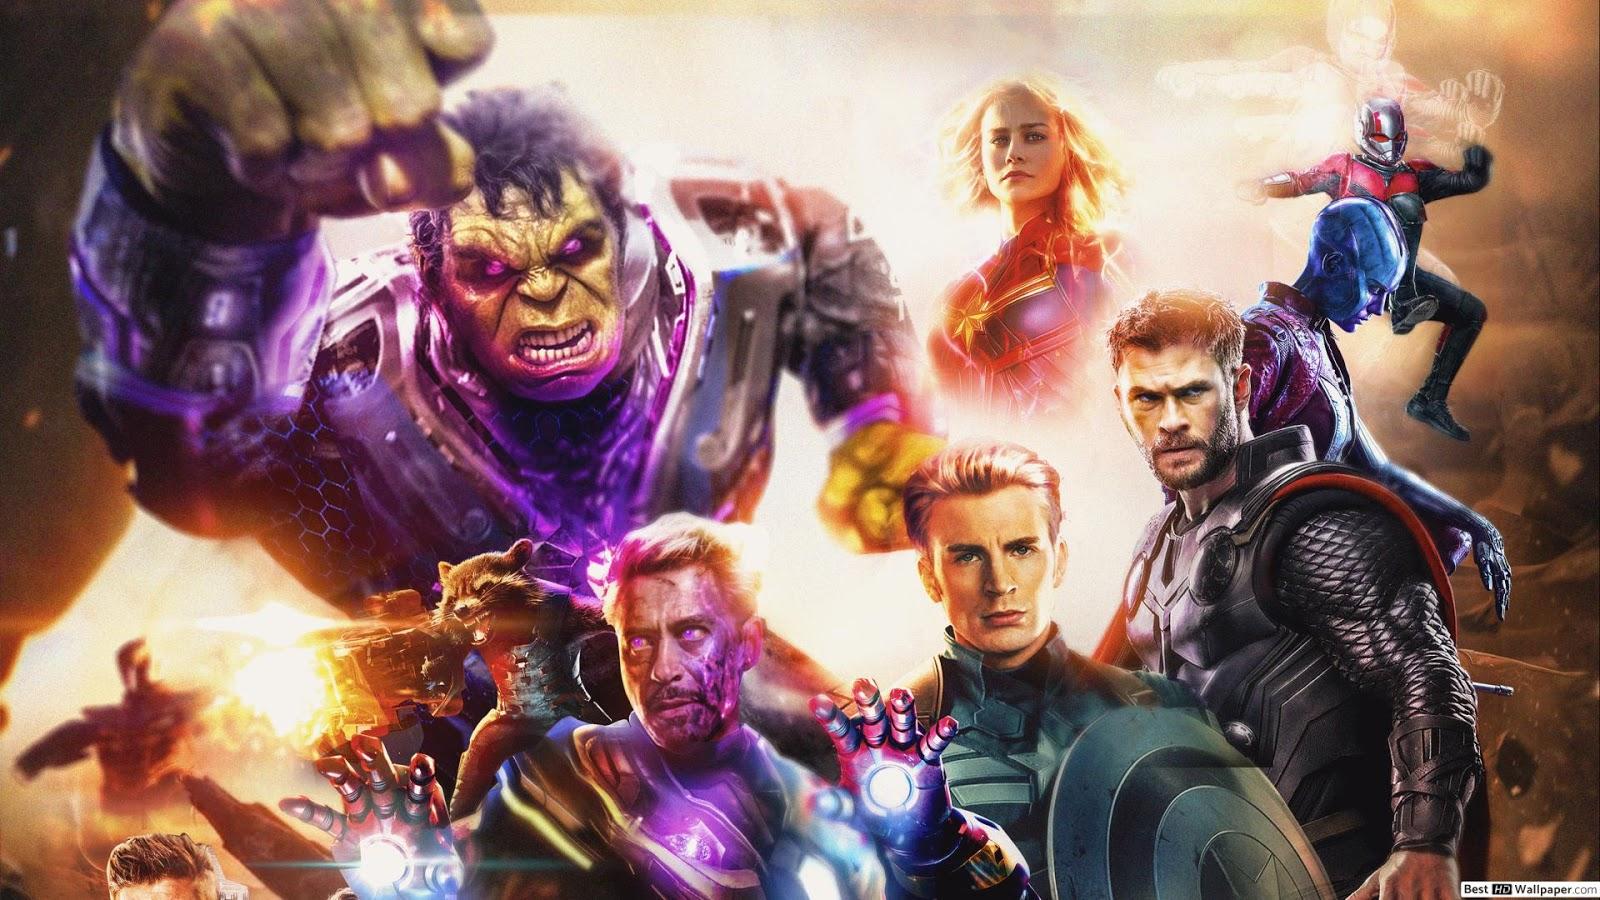 Avengers End Game Wallpaper In HD 4K Ft. Captain America